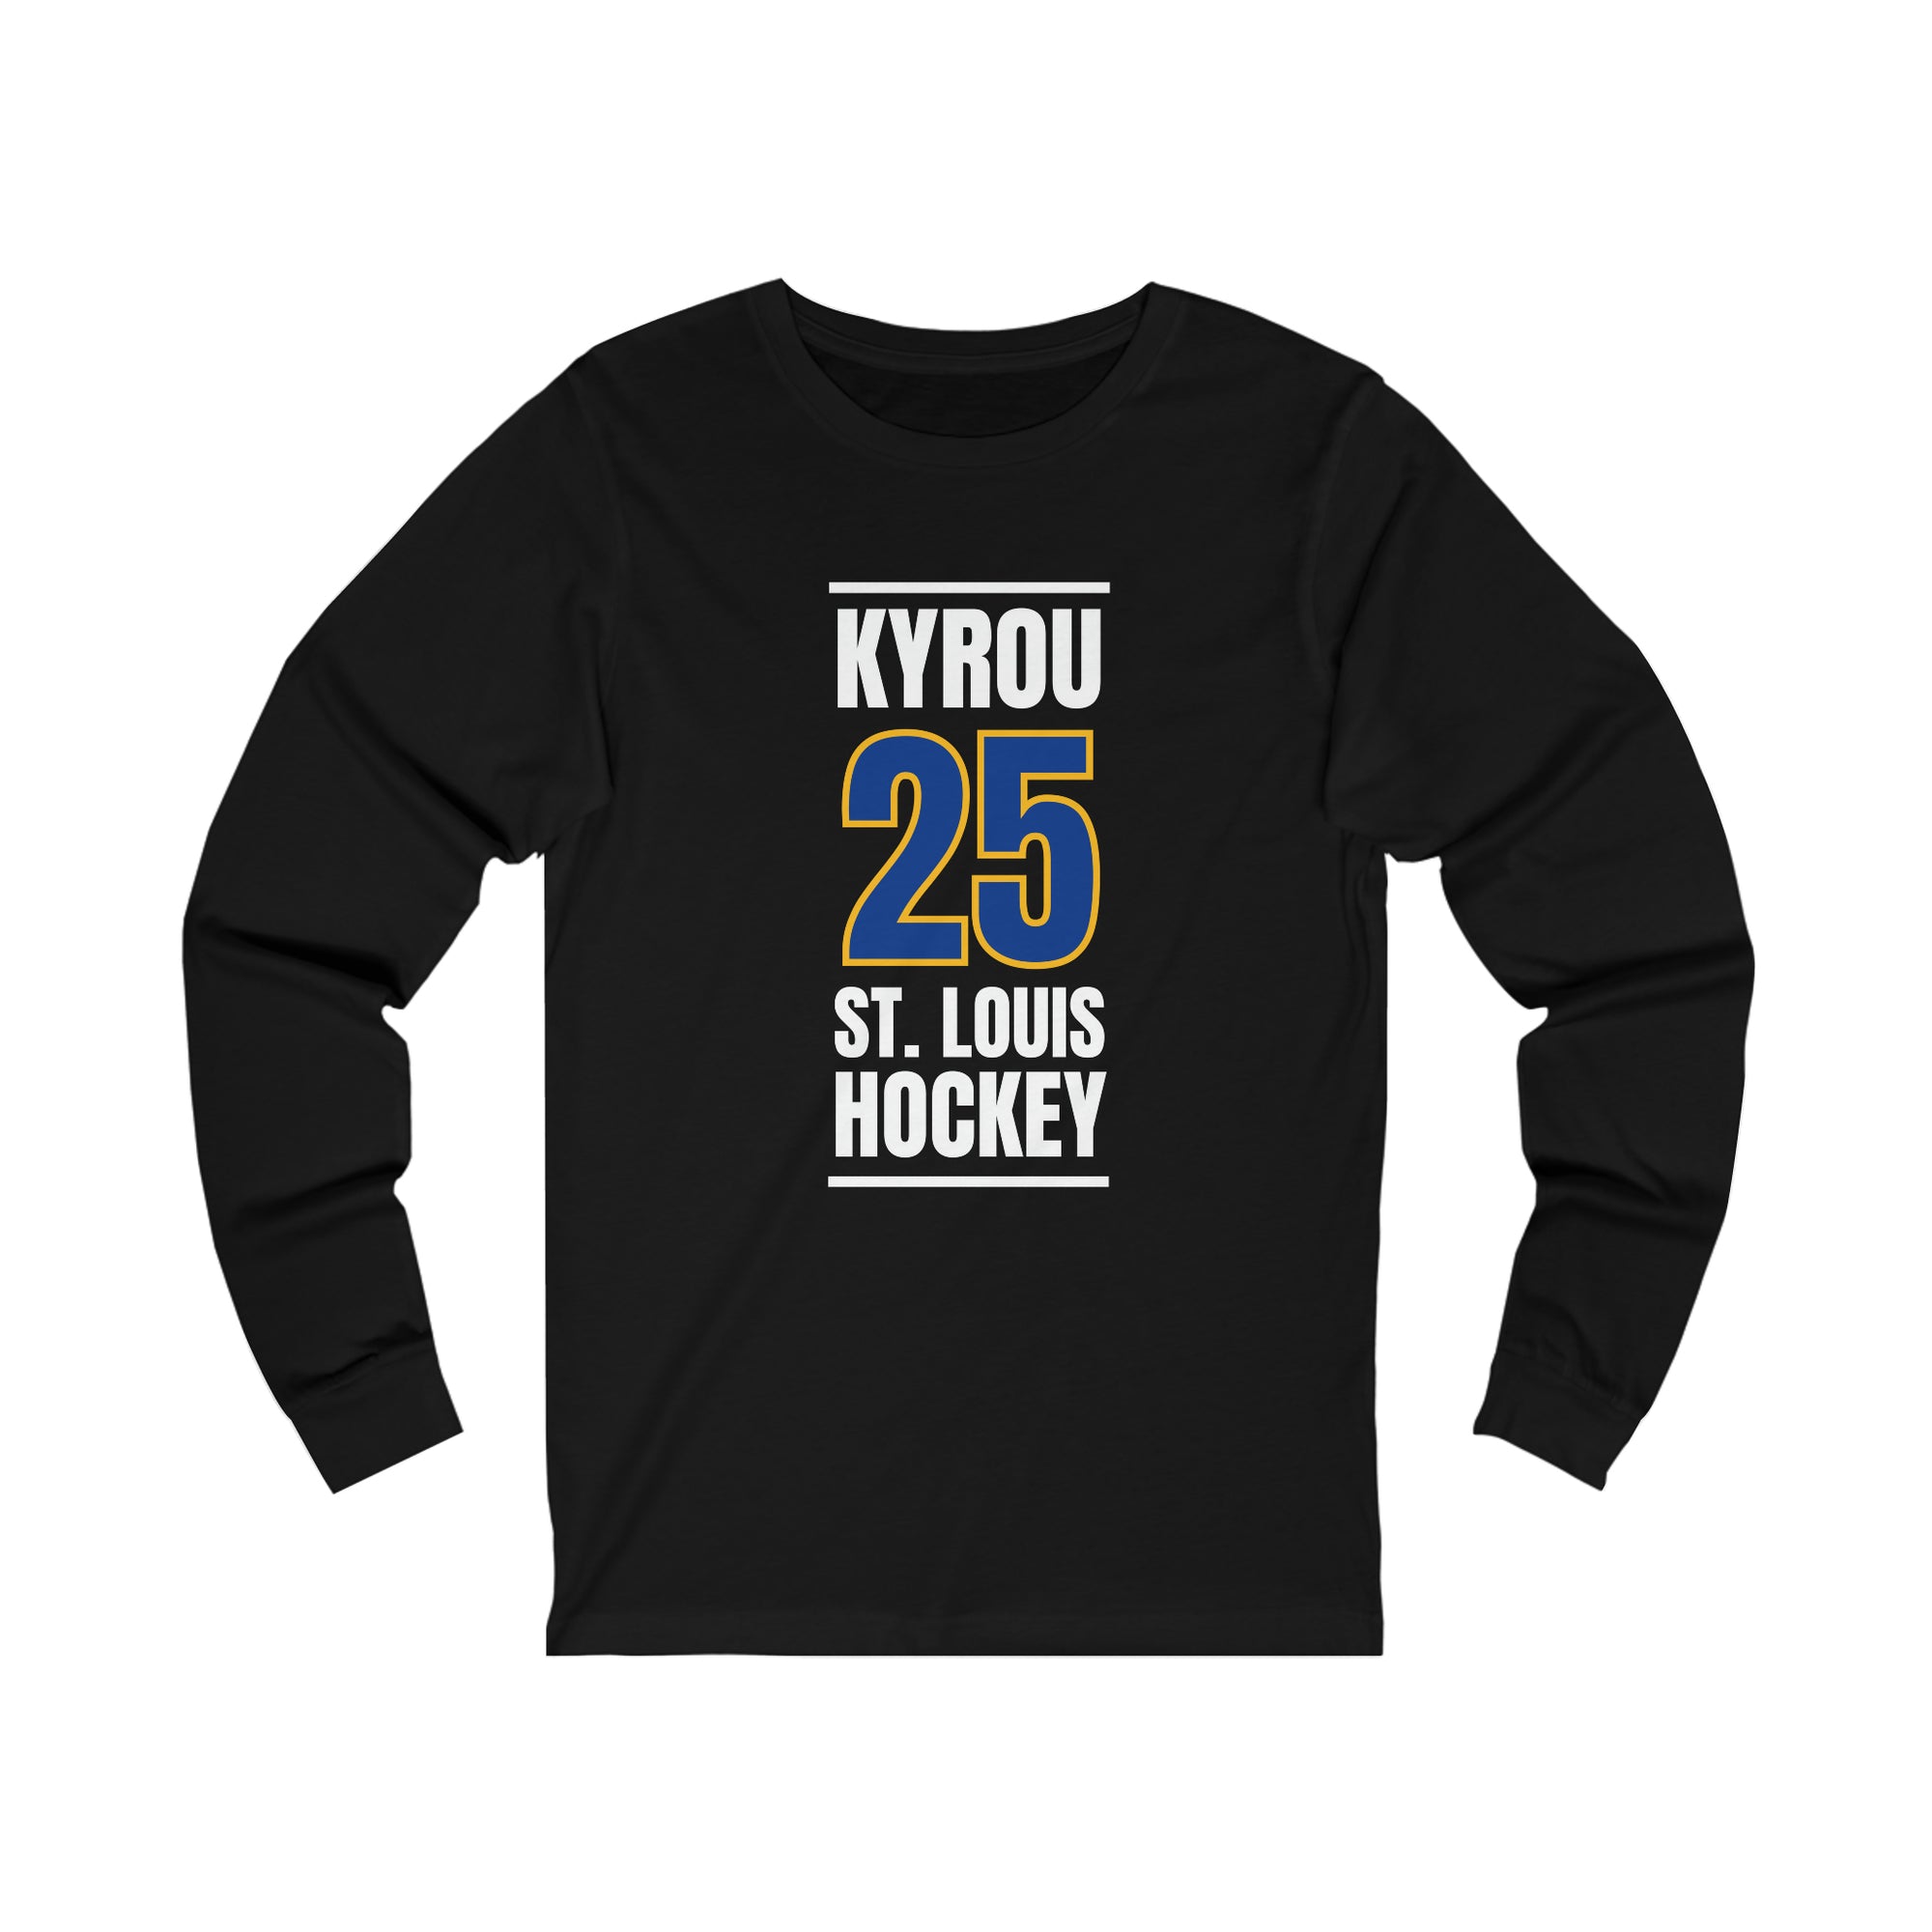 Kyrou 25 St. Louis Hockey Blue Vertical Design Unisex Jersey Long Sleeve Shirt